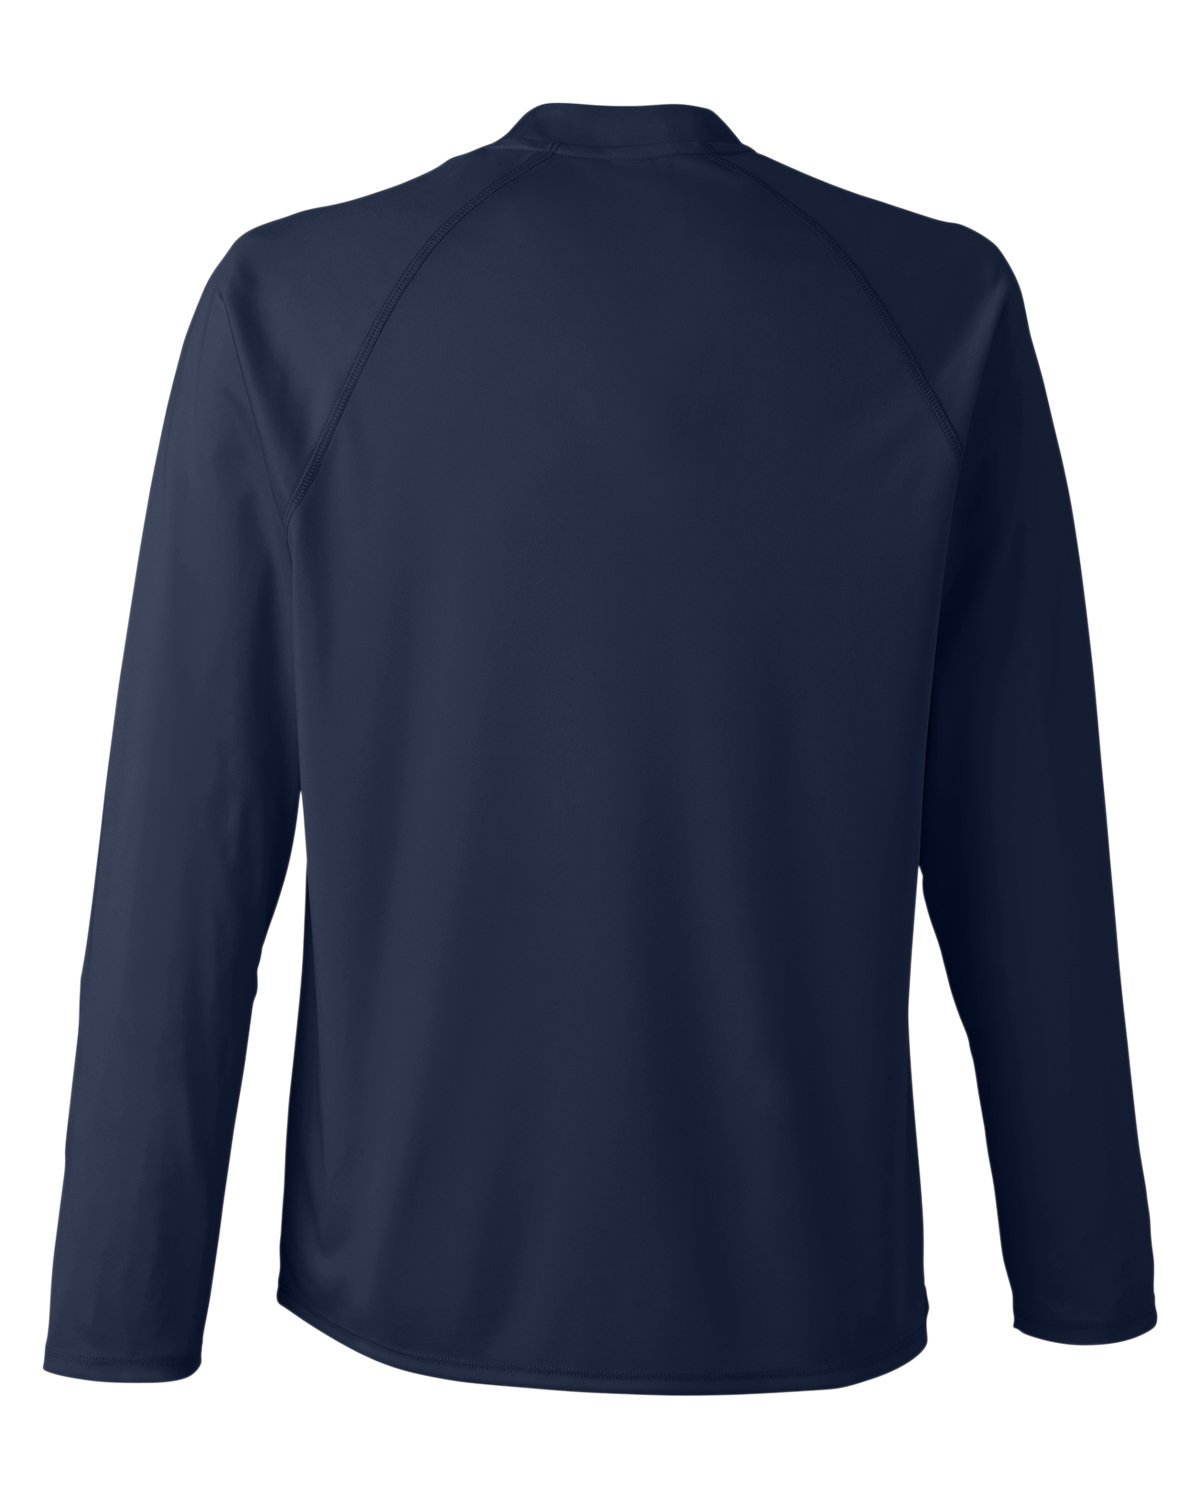 CORE365 Unisex Ultra UVP™ Raglan T-Shirt | alphabroder